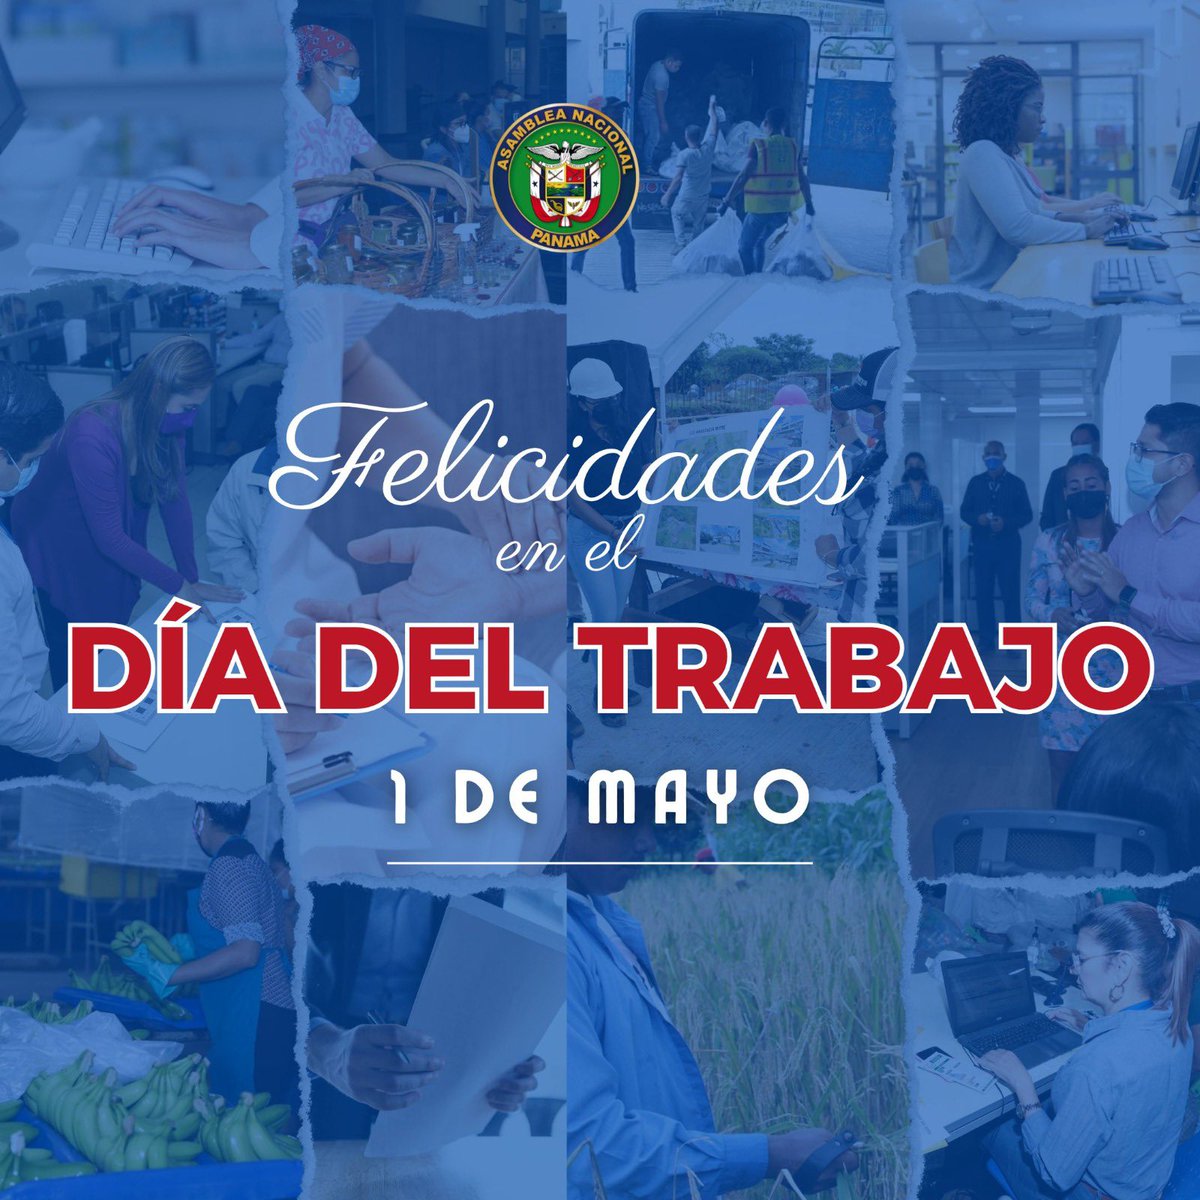 Nuestro mayor reconocimiento al pueblo panameño que trabaja cada día por un mejor bienestar. Sus hombres y mujeres son parte importante del crecimiento del país. #tuvozimporta